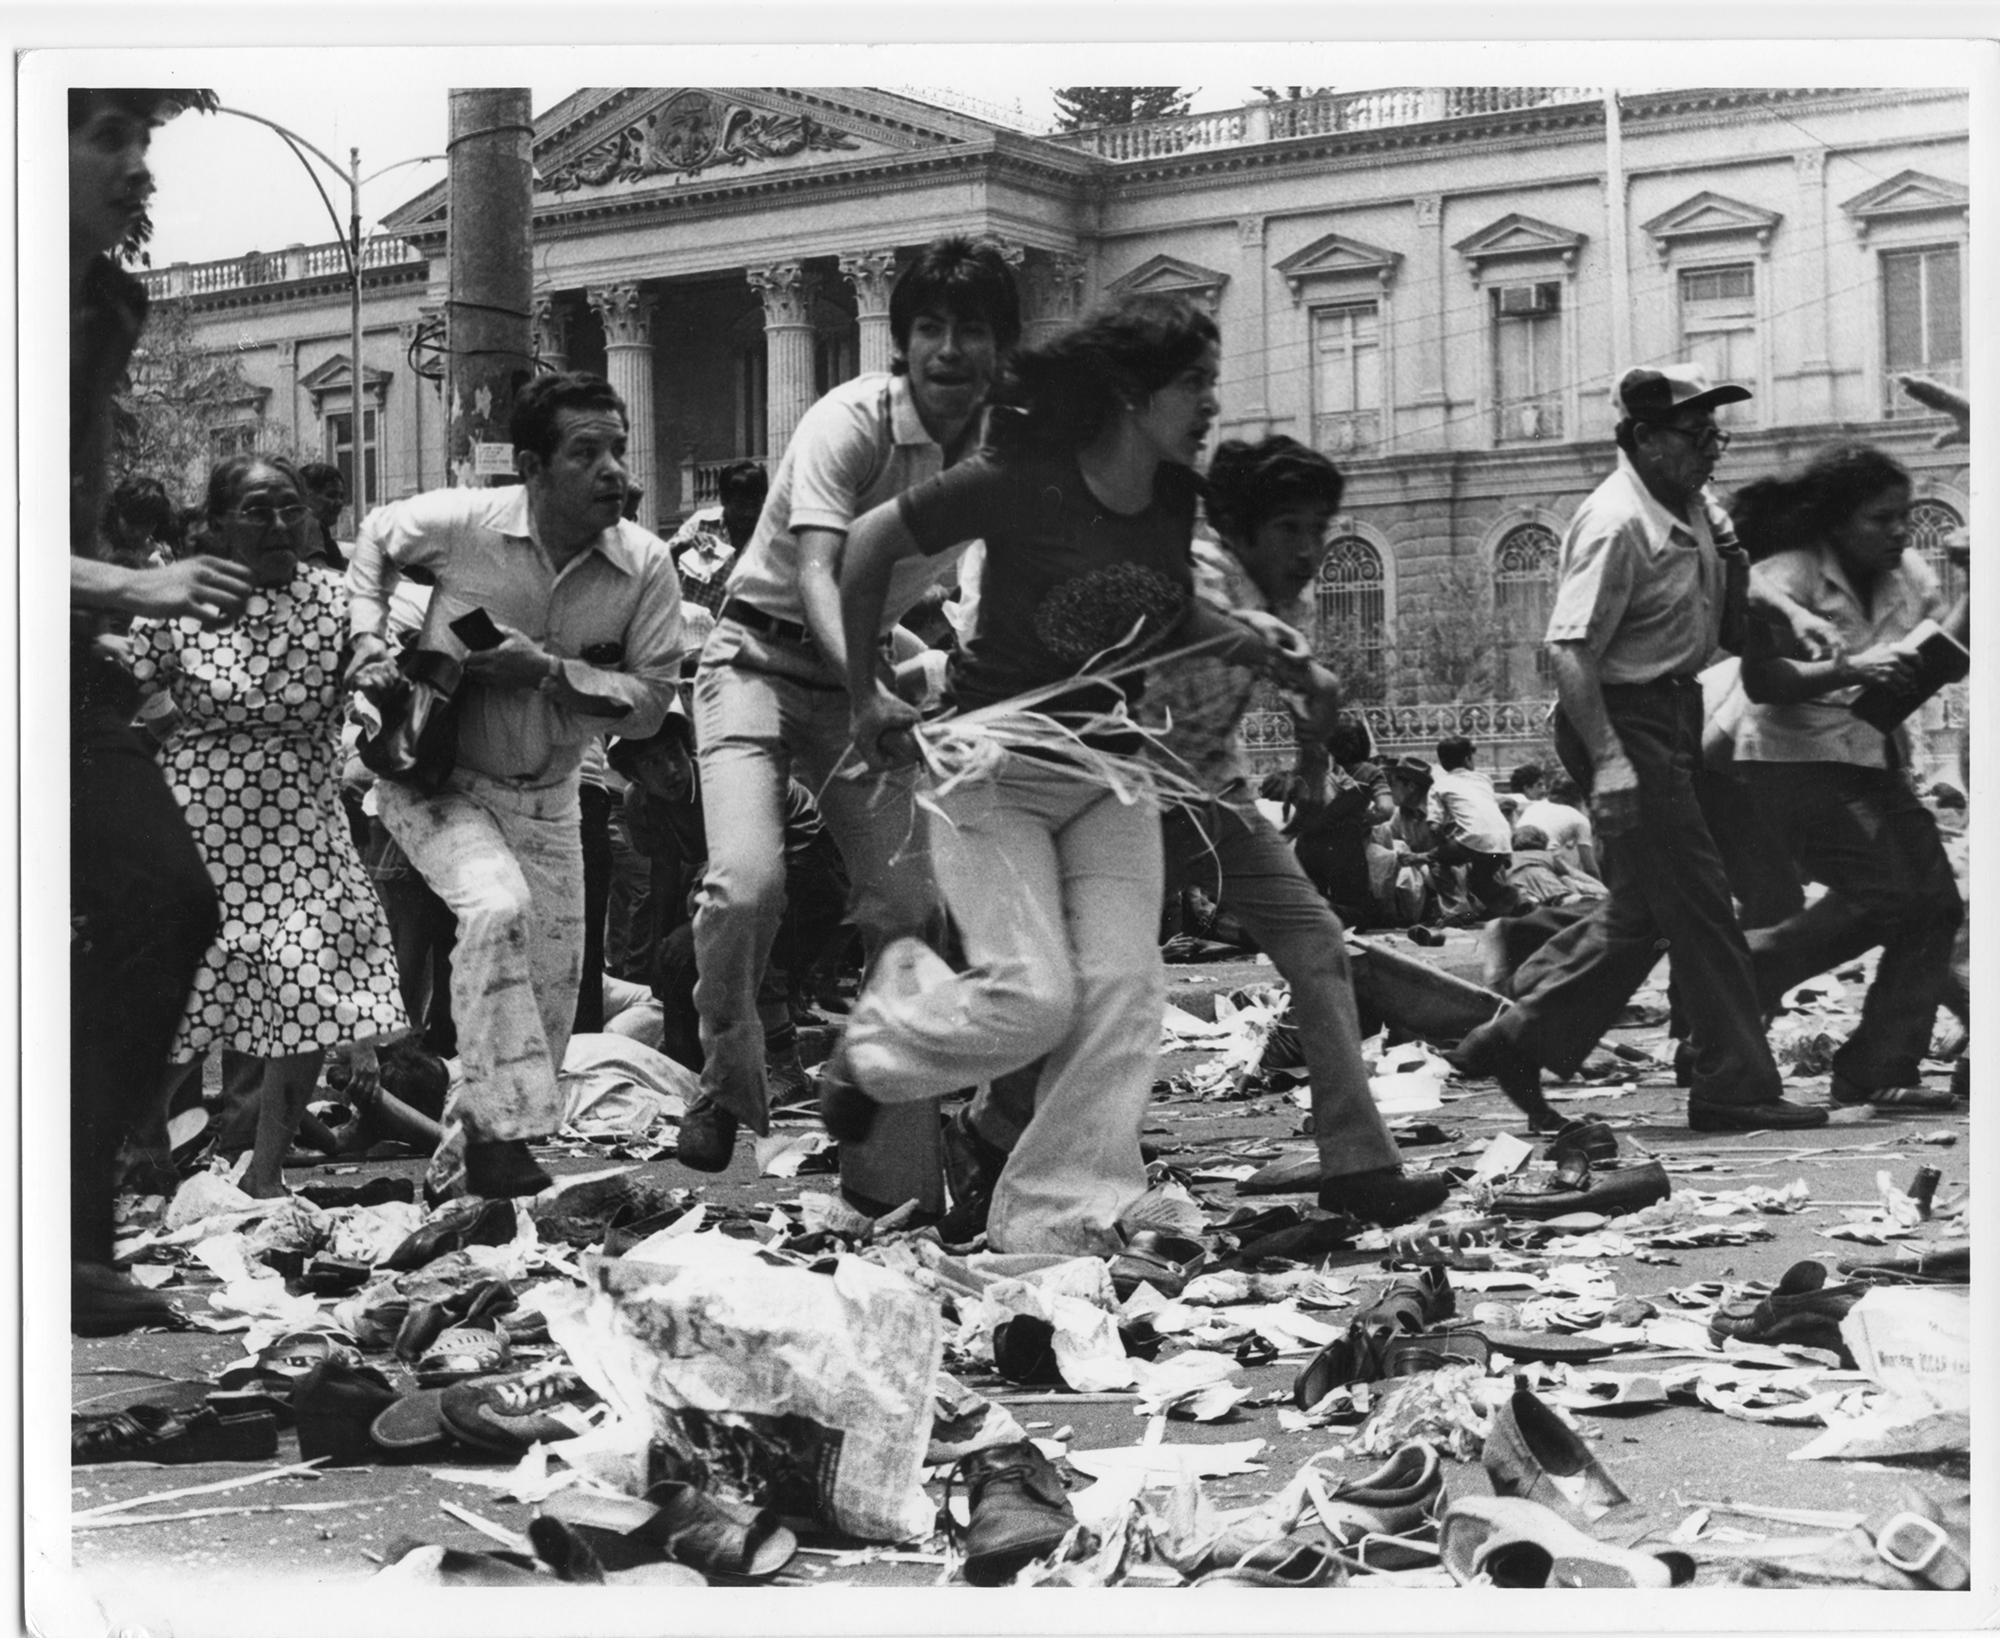 Asistentes al funeral de monseñor Romero corren tras escuchar los disparos en medio de la multitud, en la Plaza Barrios, el domingo 30 de marzo de 1980. Foto: Cortesía del Museo de la Palabra y la Imagen (MUPI).